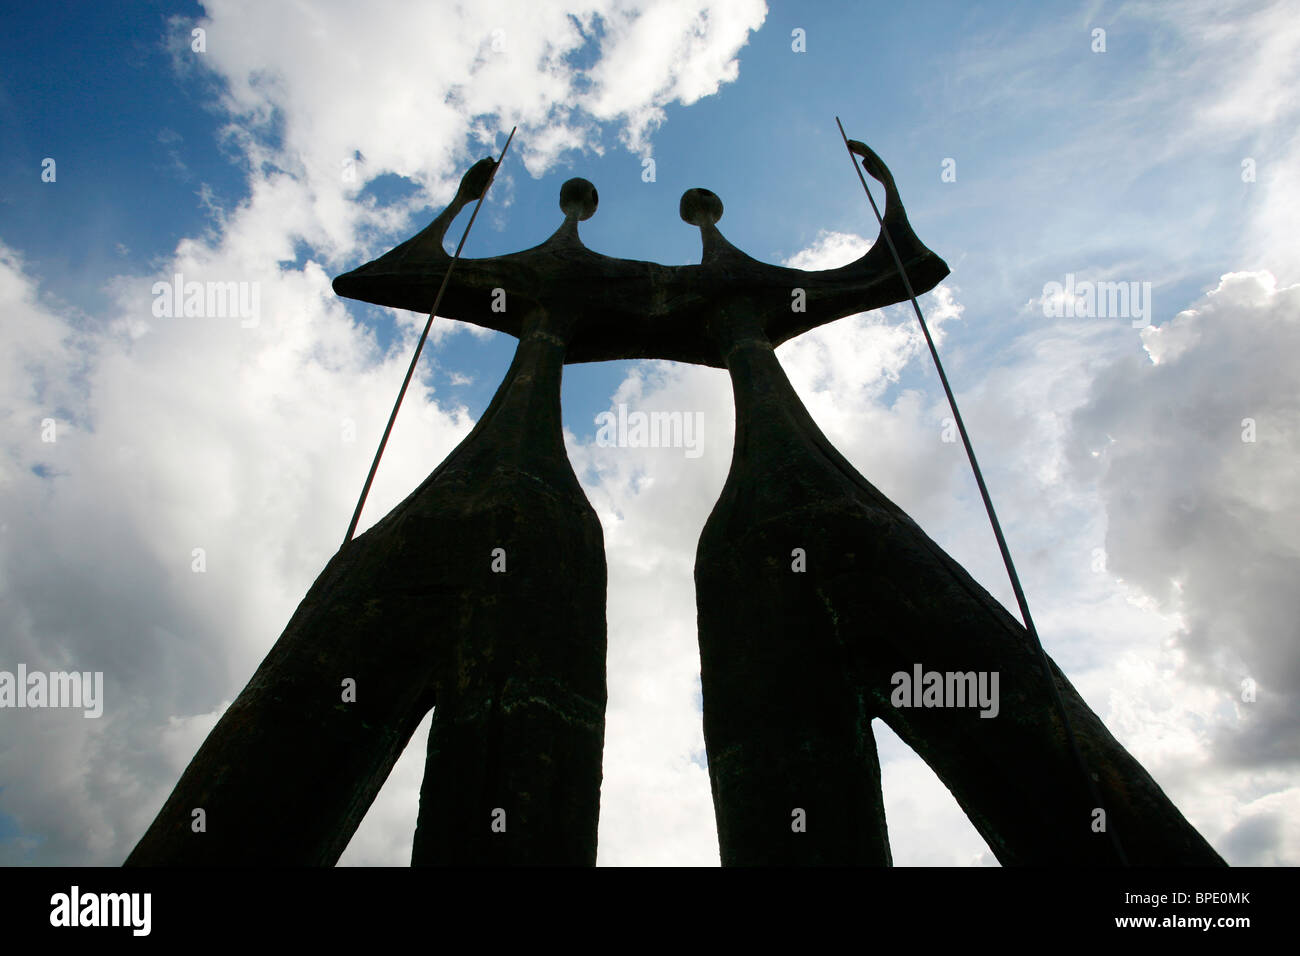 Os Candangos or The Warriors sculpture at Praca dos Tres Poderes, Brasilia, Brazil. Stock Photo